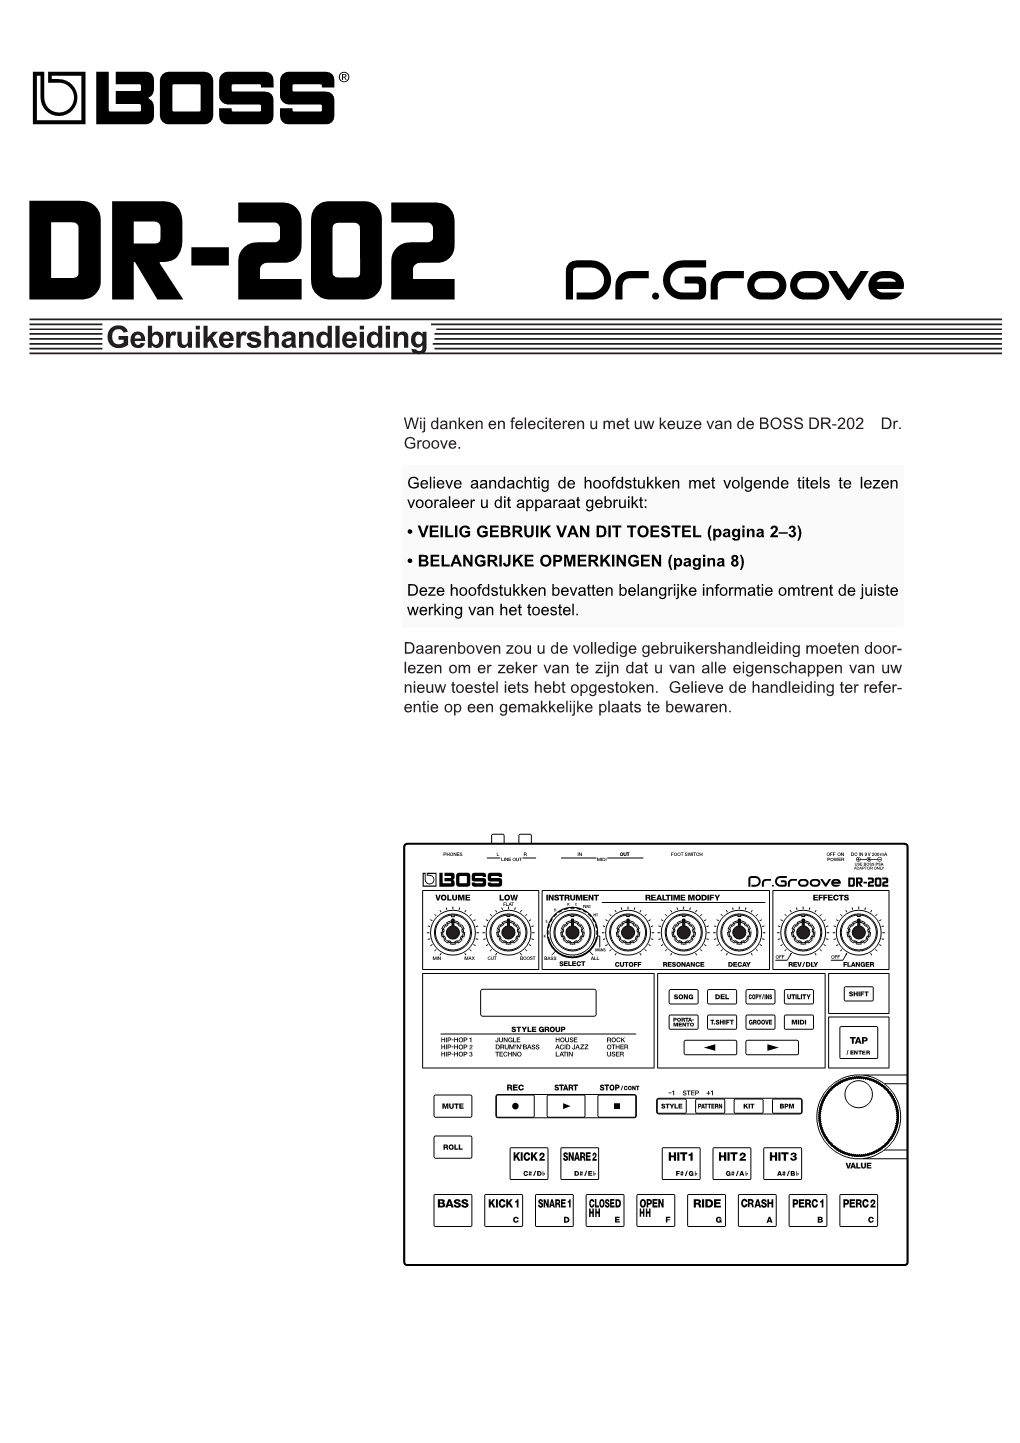 Kenmerken Van De DR-202